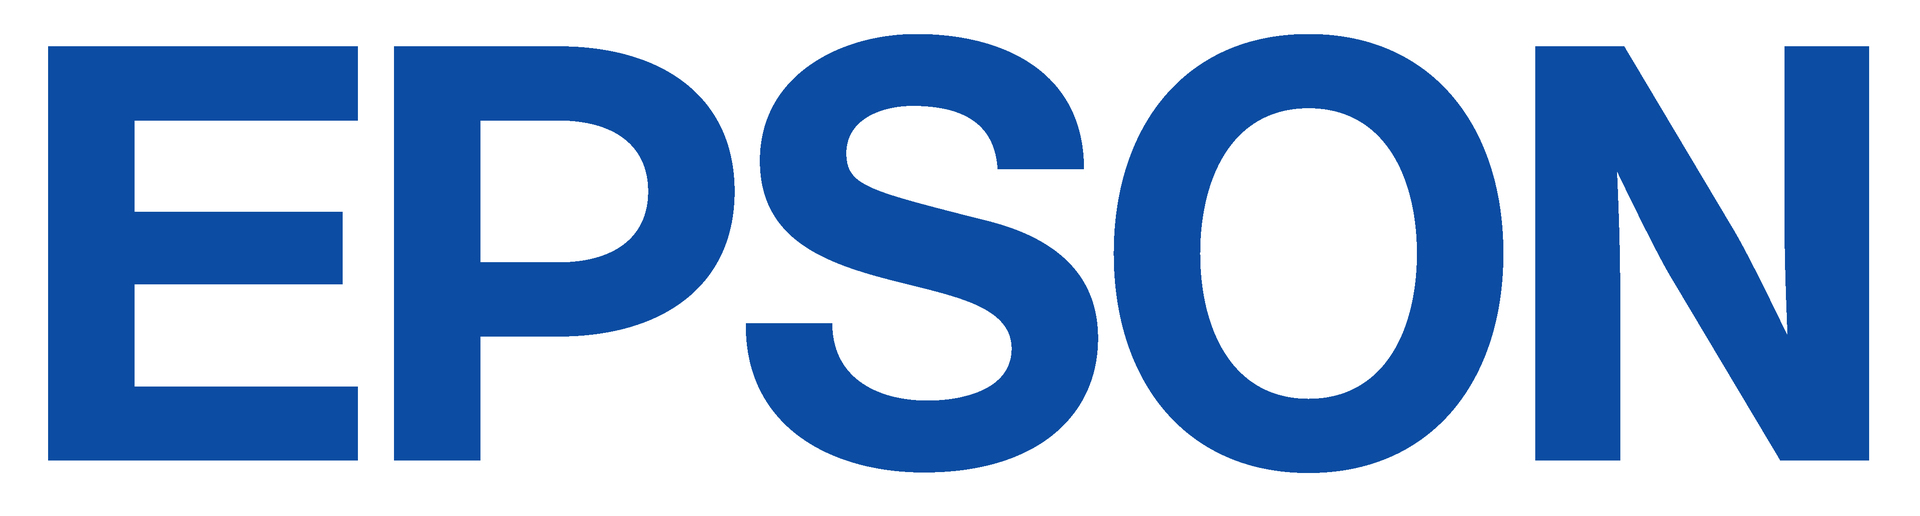 EPSON Logo